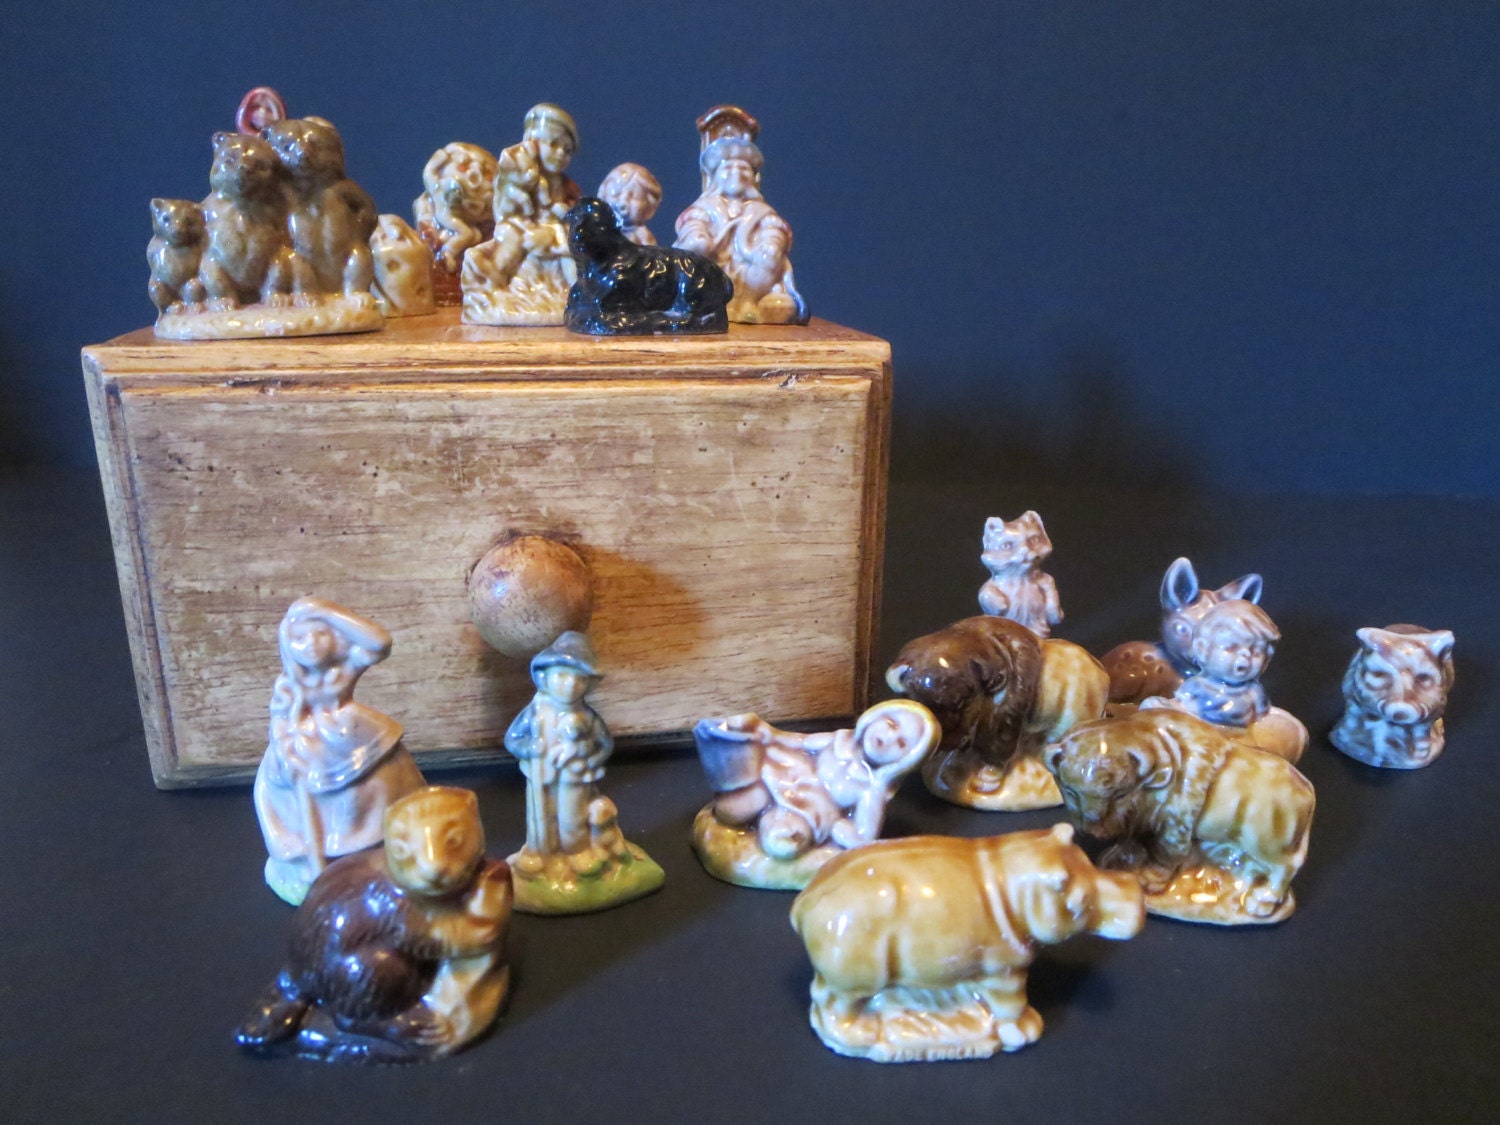 tea box figurines